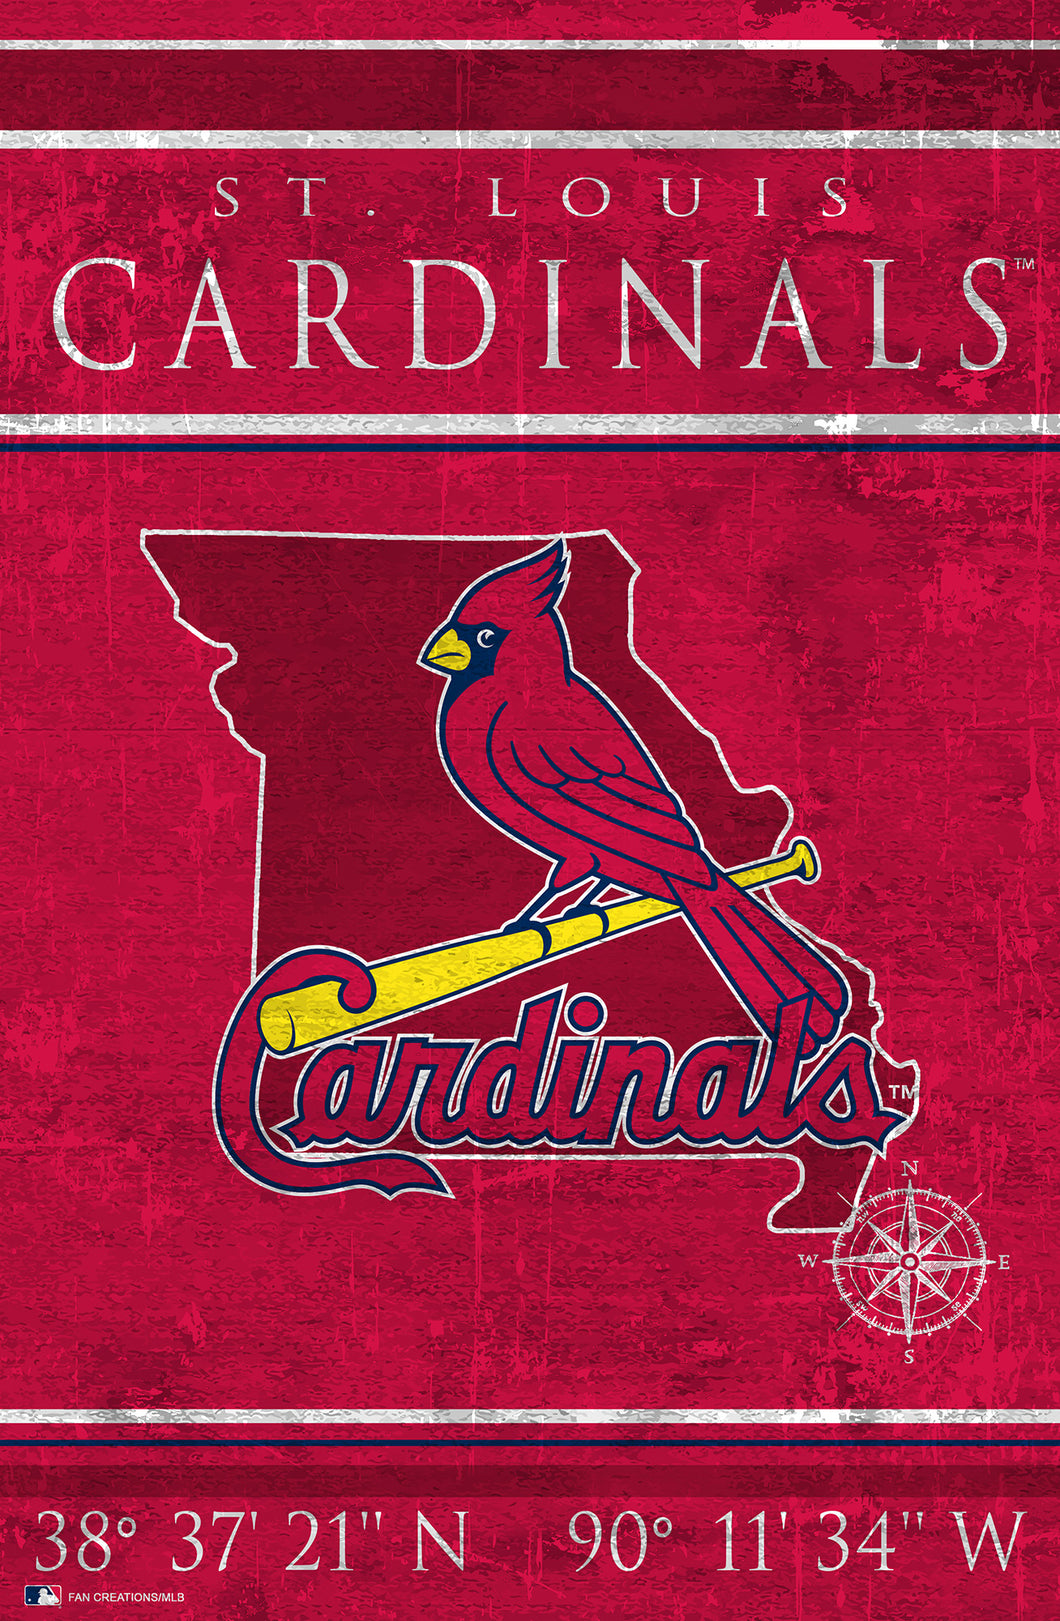 St. Louis Cardinals Coordinates Wood Sign - 17